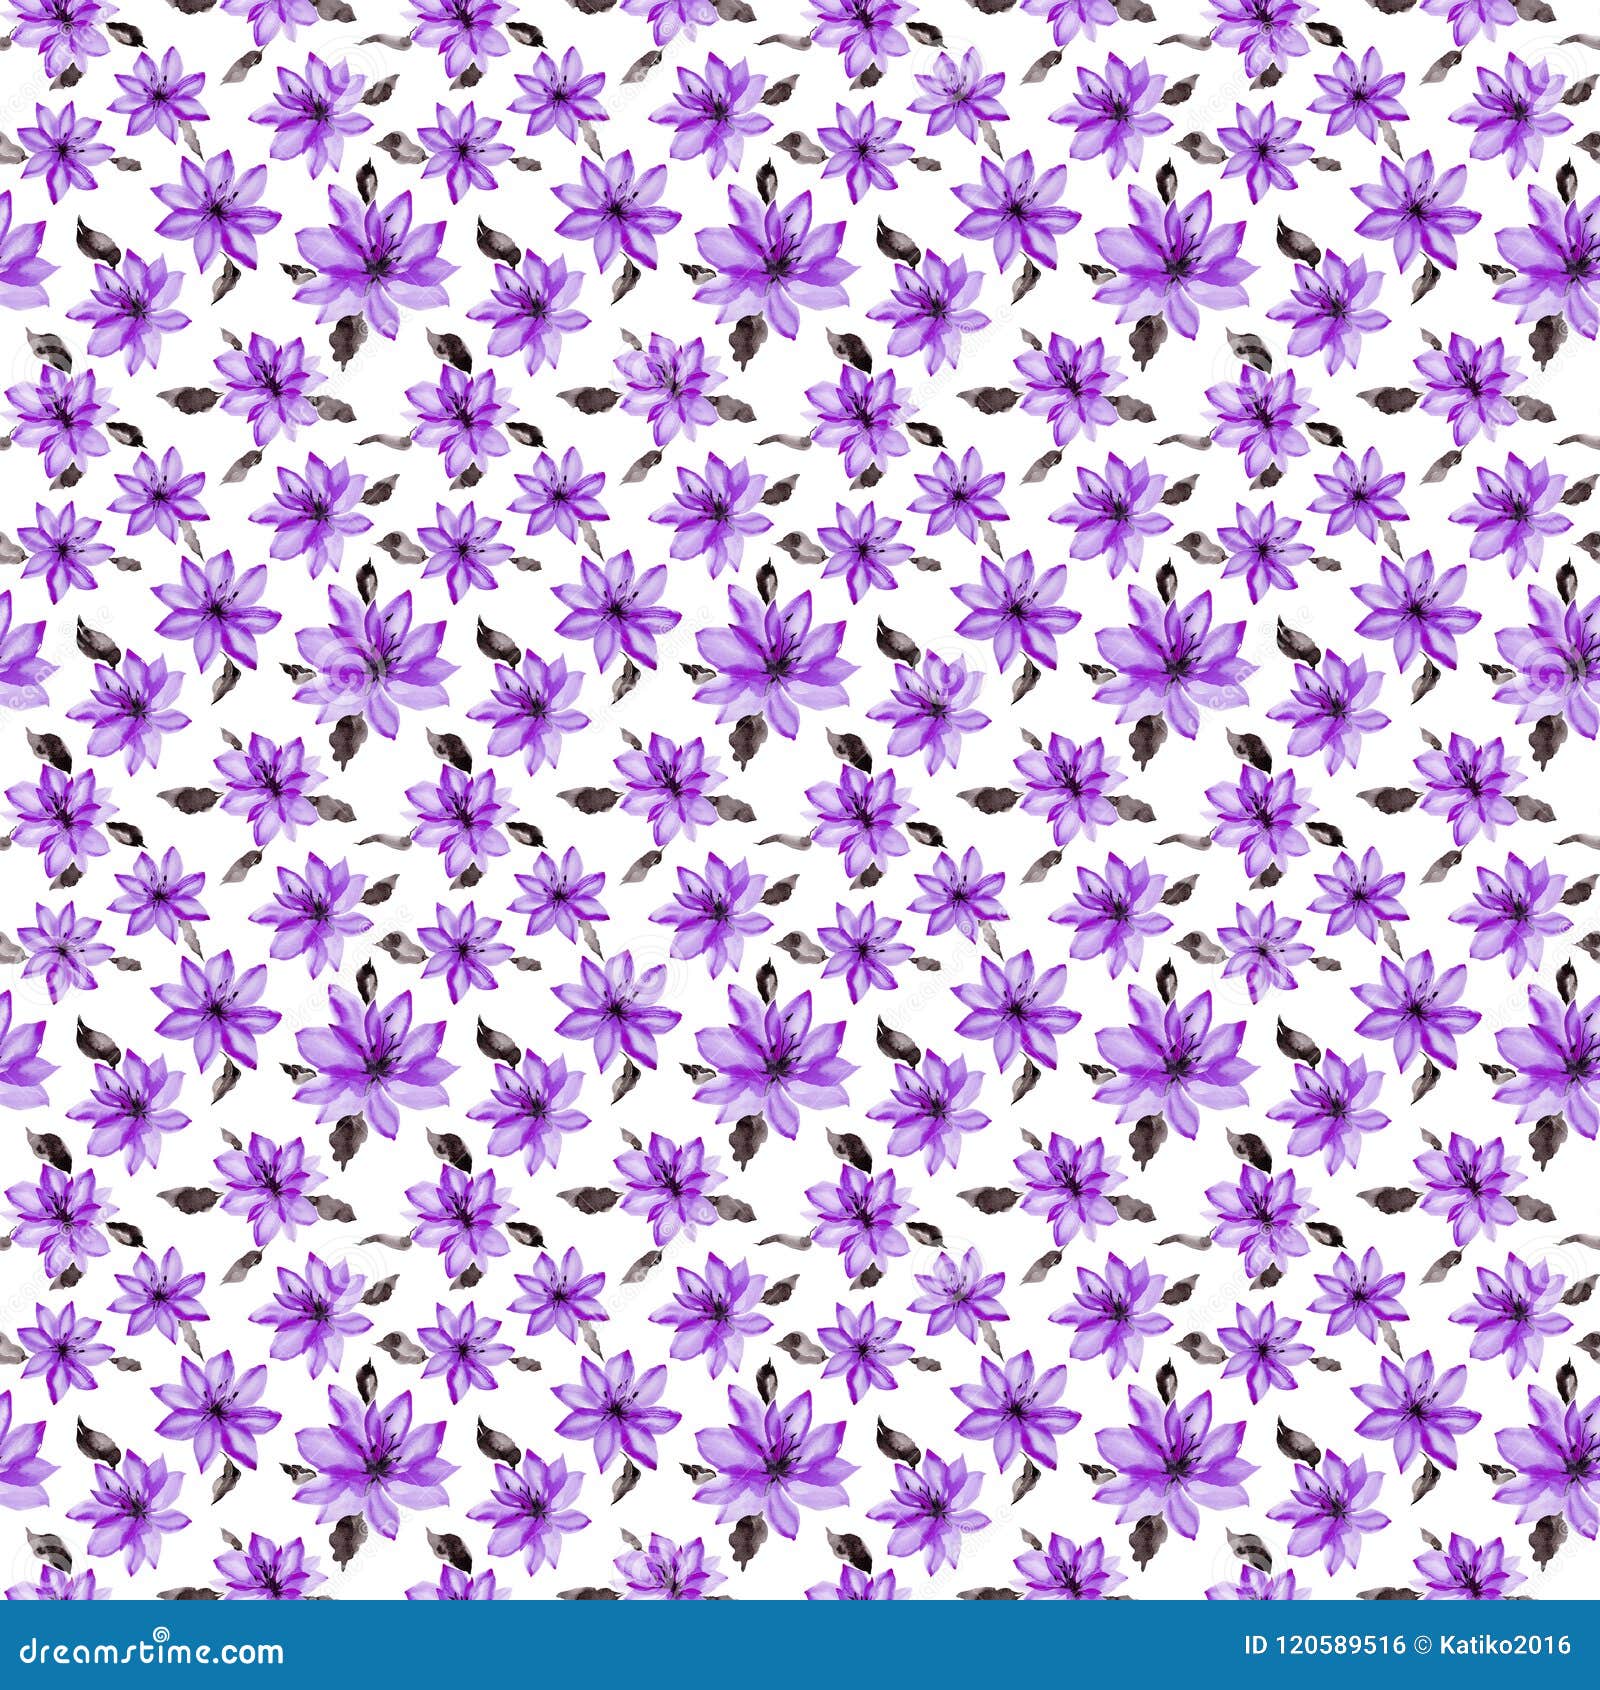 Những bông hoa màu tím nhỏ xinh không chỉ đẹp mắt mà còn rất nổi bật trên nền trắng. Hãy xem thử thiết kế này để cảm nhận sự nhẹ nhàng, tinh tế của những viên hoa nhỏ này.